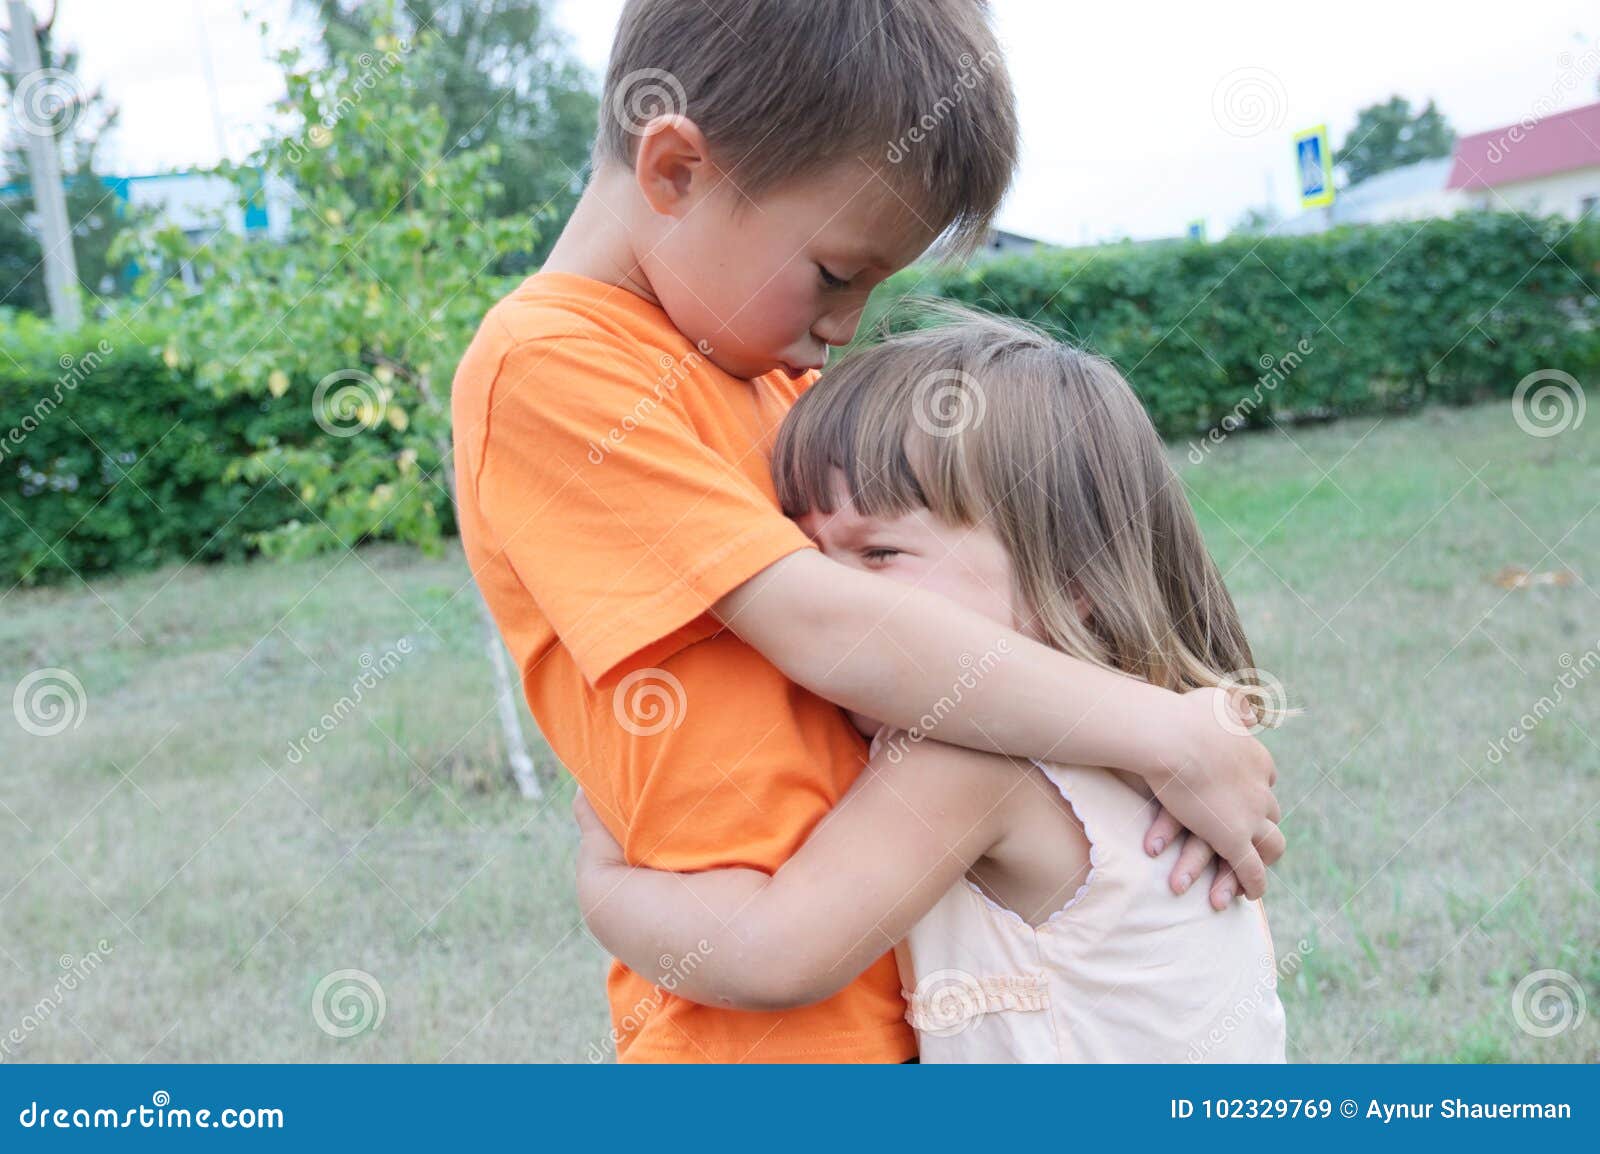 Лапает младшую. Мальчик и девочка обнимаются. Мальчик обнимает сестру. Мальчик обнимает девочку. Старший брат обнимает сестру.